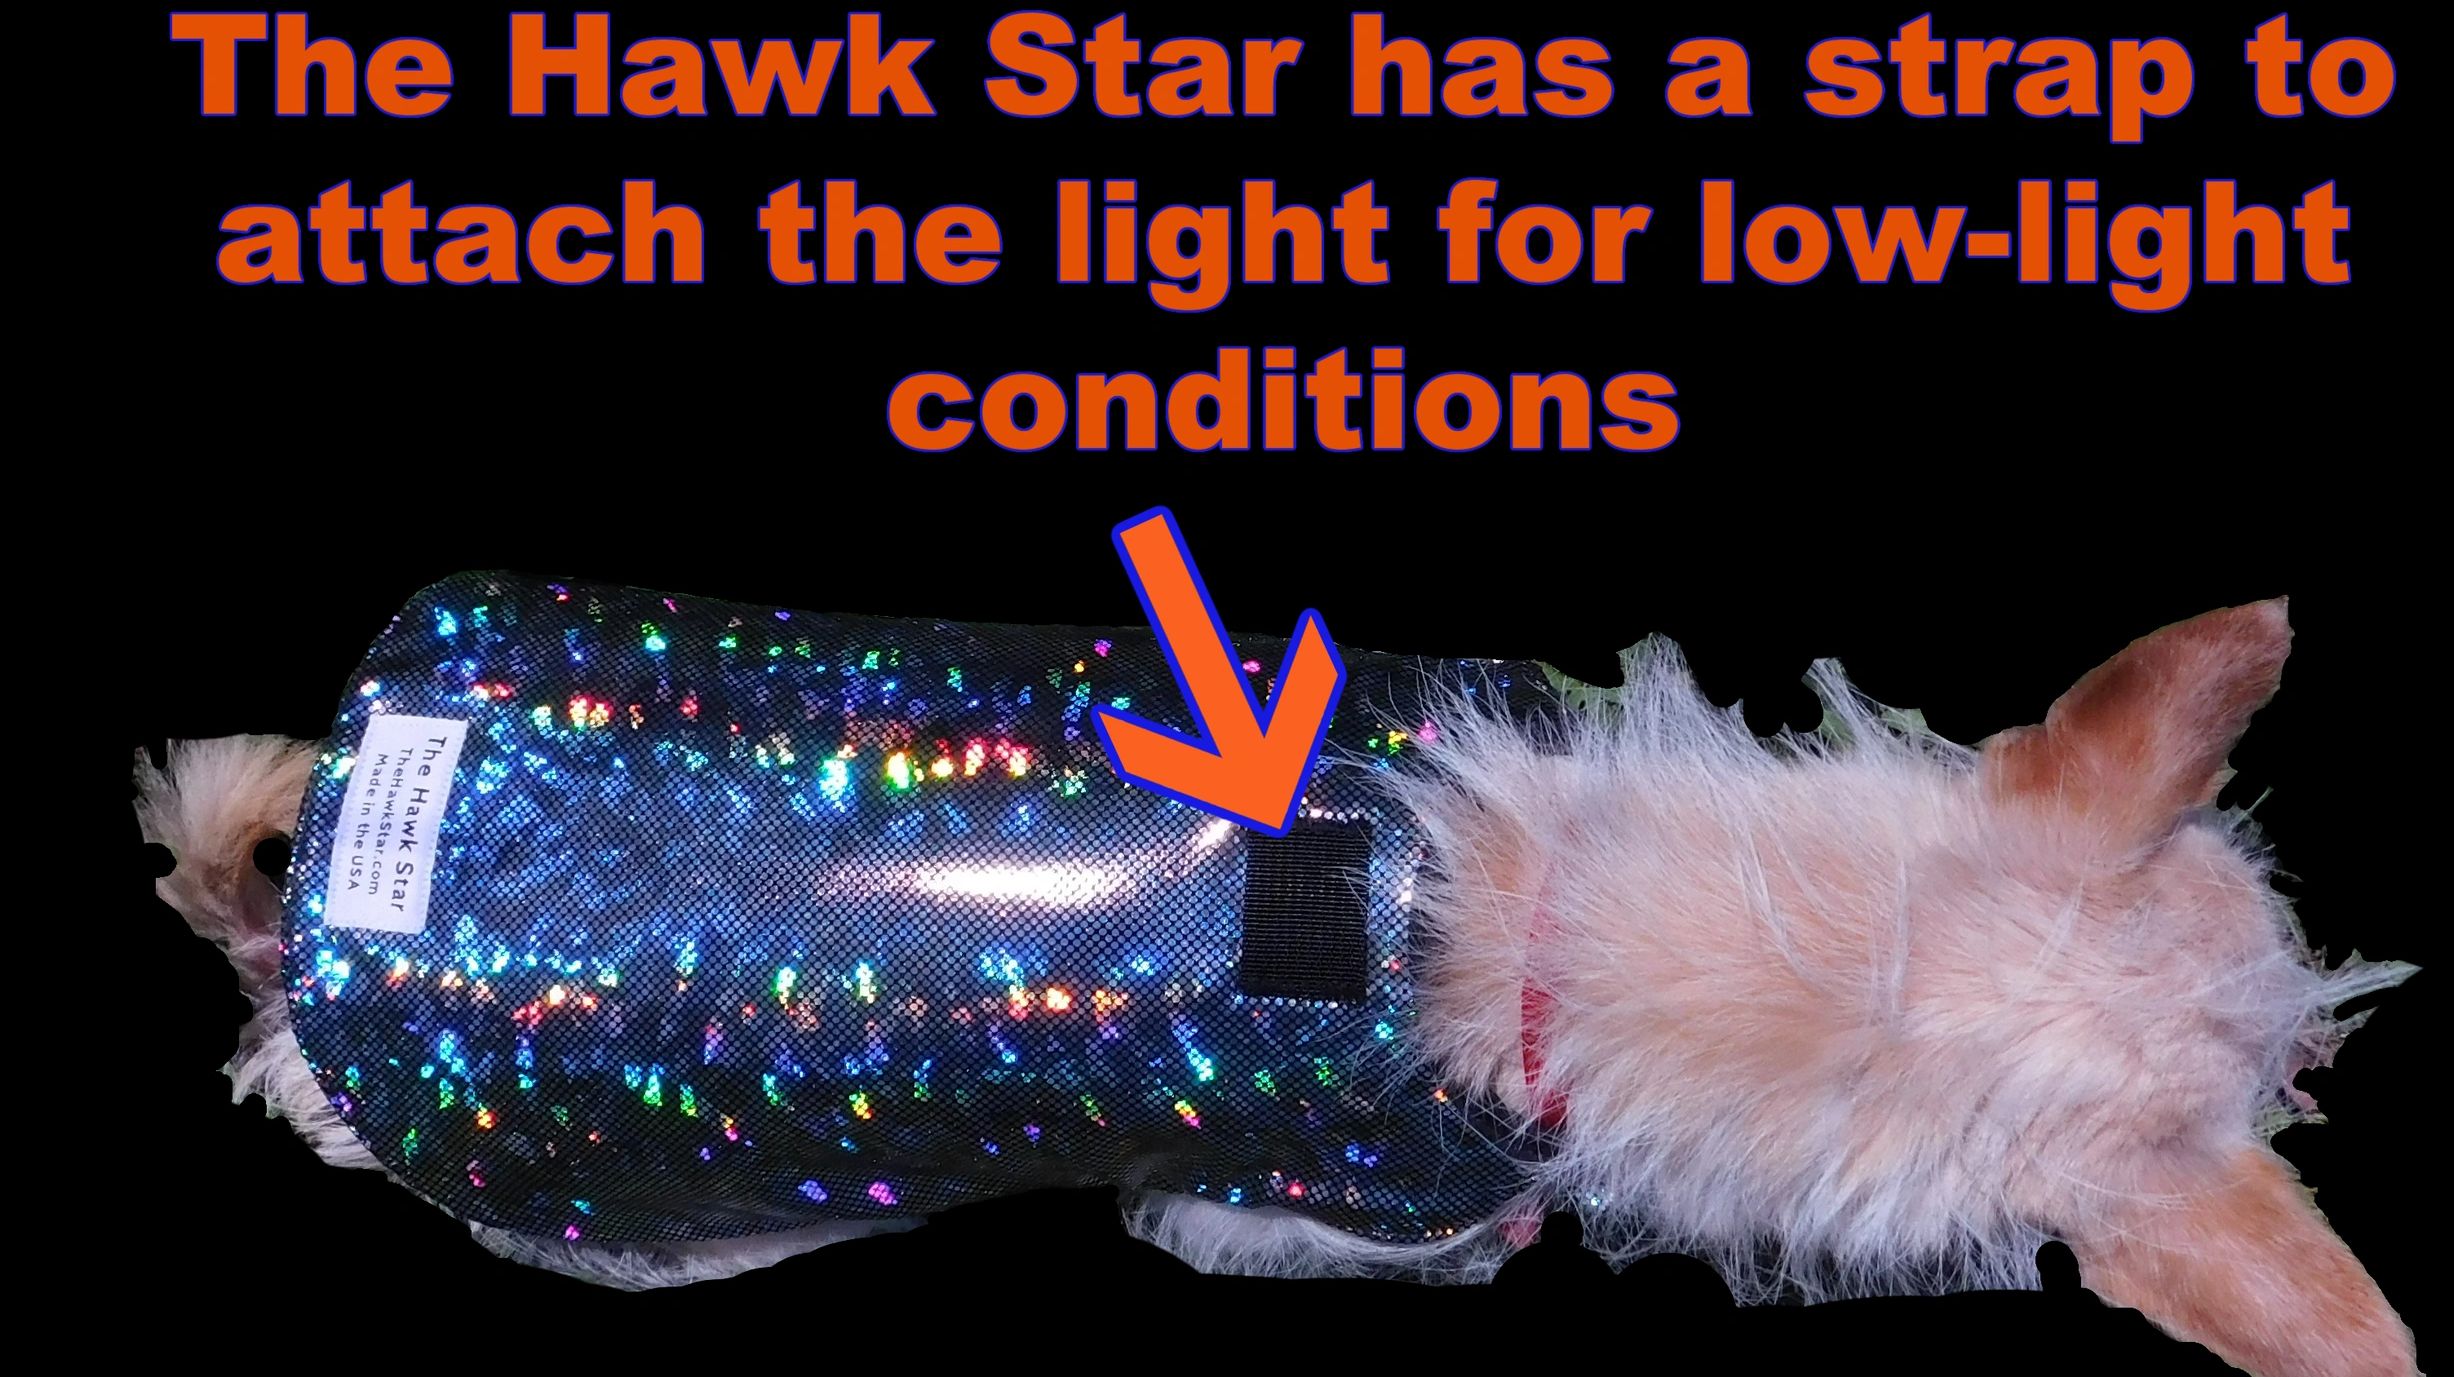 The Hawk Star Pet Protection Vest 